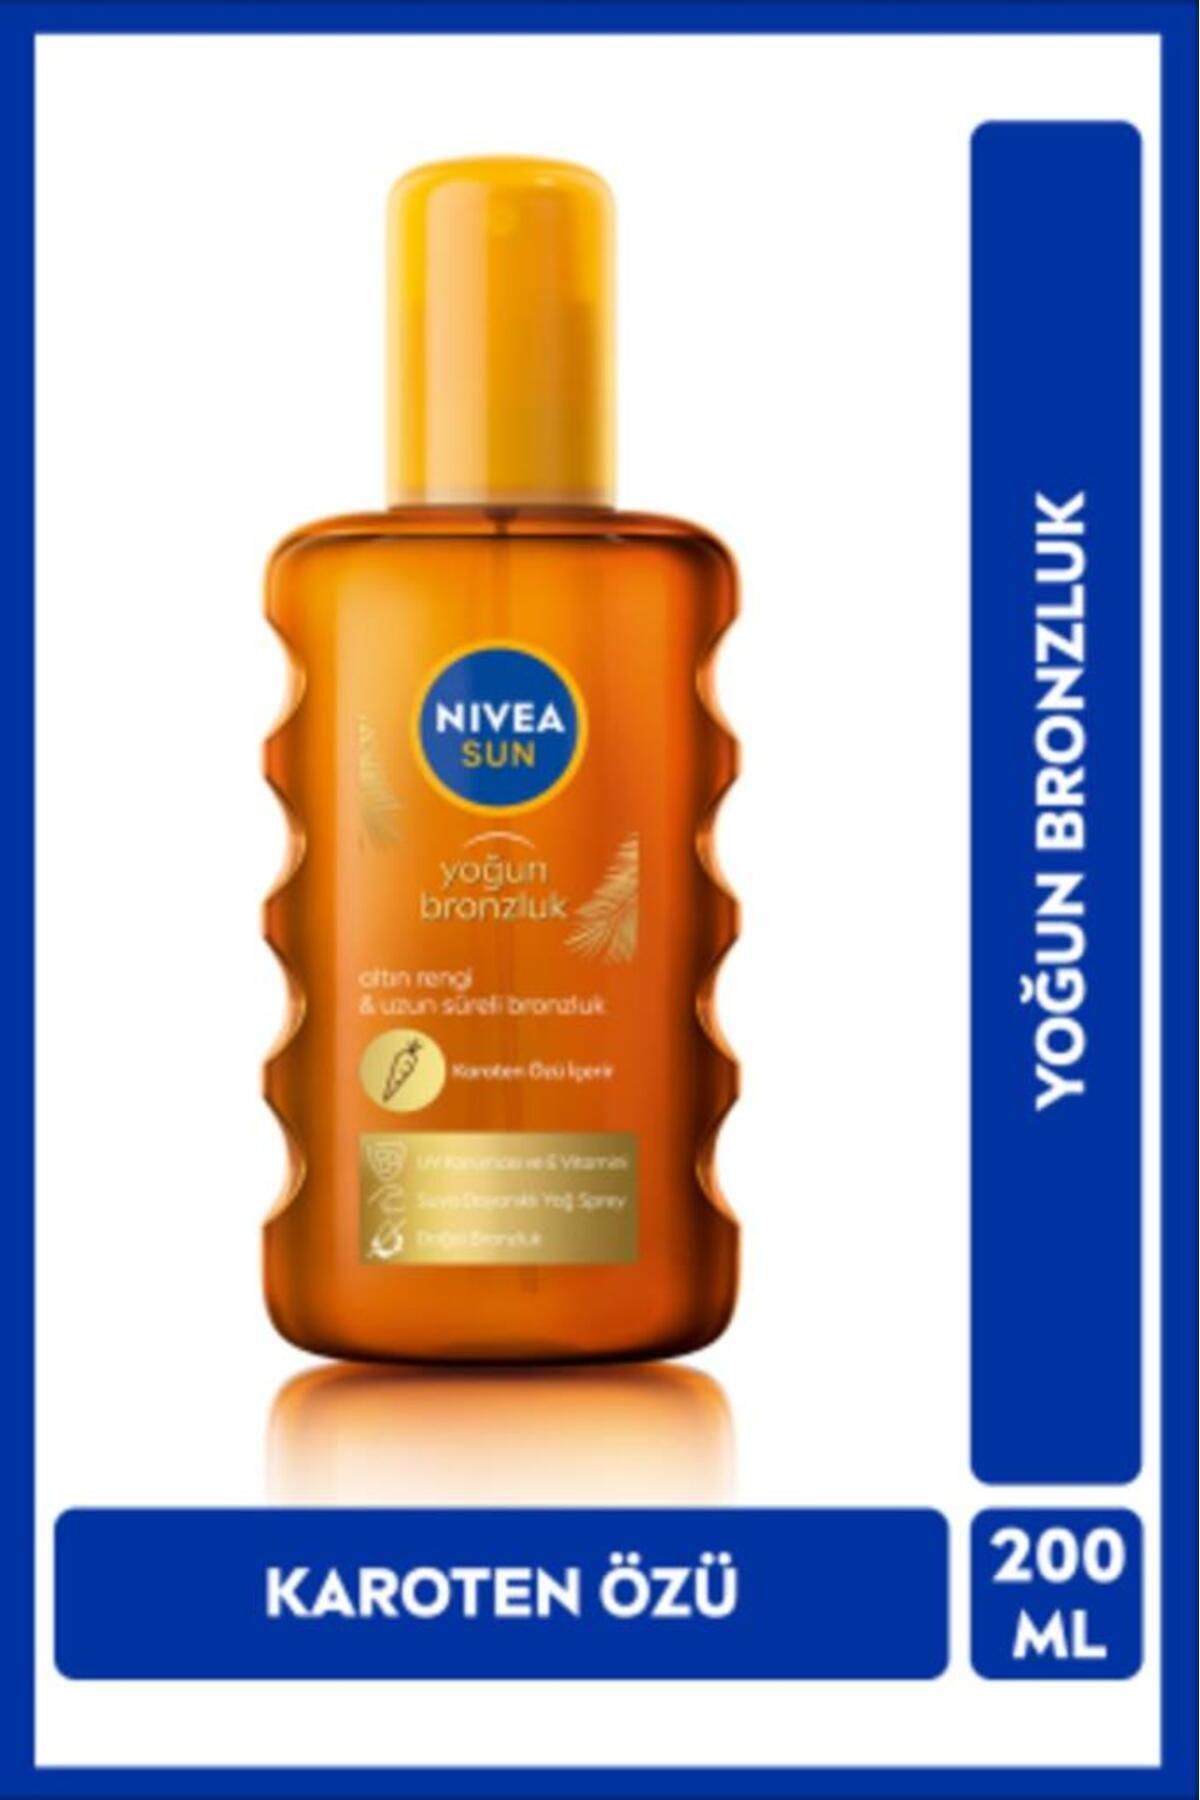 NIVEA Sun Karoten Özlü Yoğun Bronzlaştırıcı Güneş Yağ Sprey 200ml, E Vitamini, Uva Uvb, Doğal Bronzluk